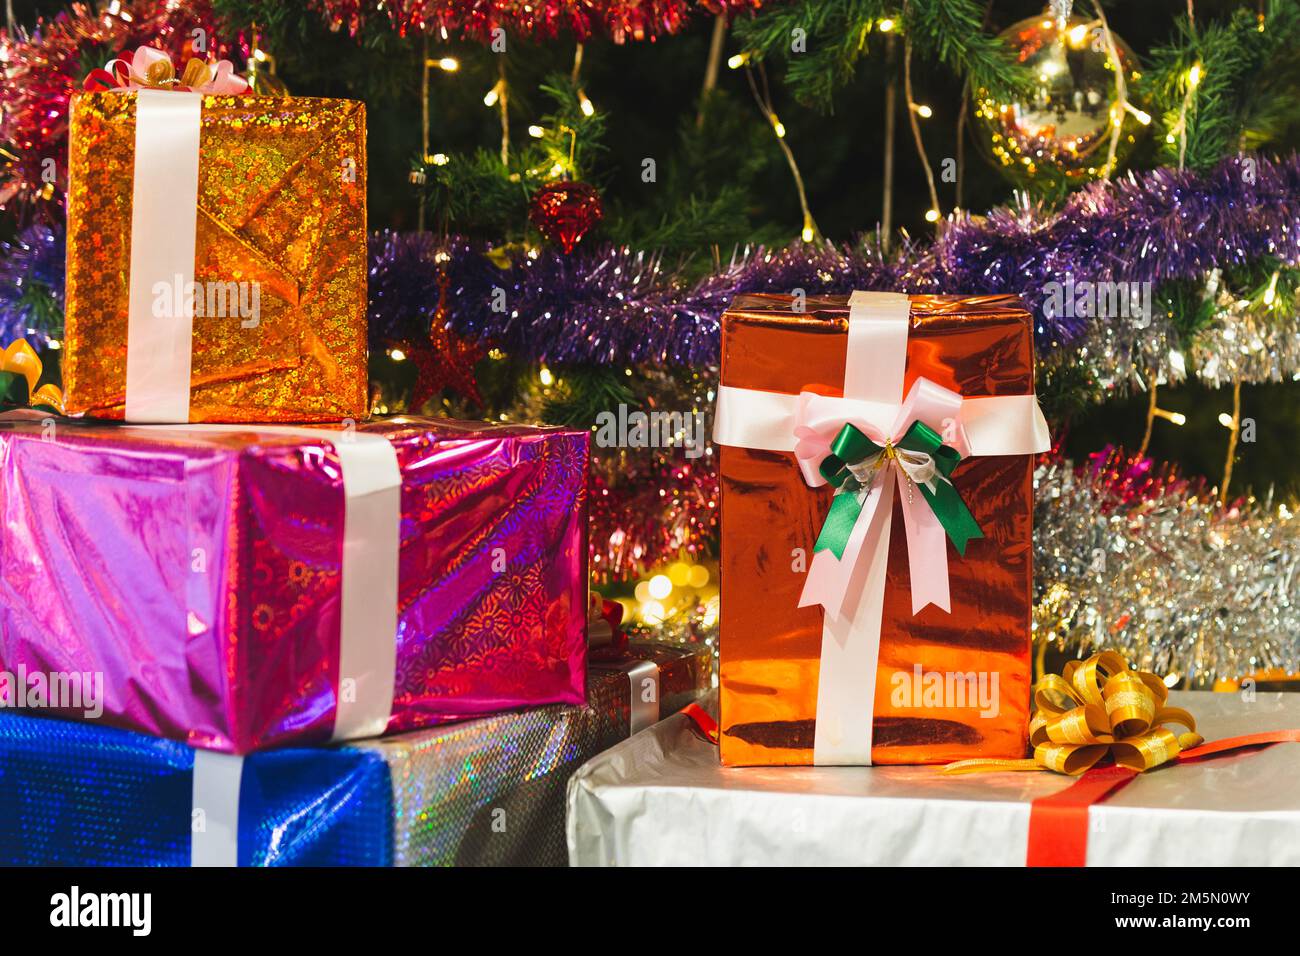 Weihnachtsgeschenke mit Band und Weihnachtsdekorationen feiern das neue Jahr und die Weihnachtszeit. Stockfoto